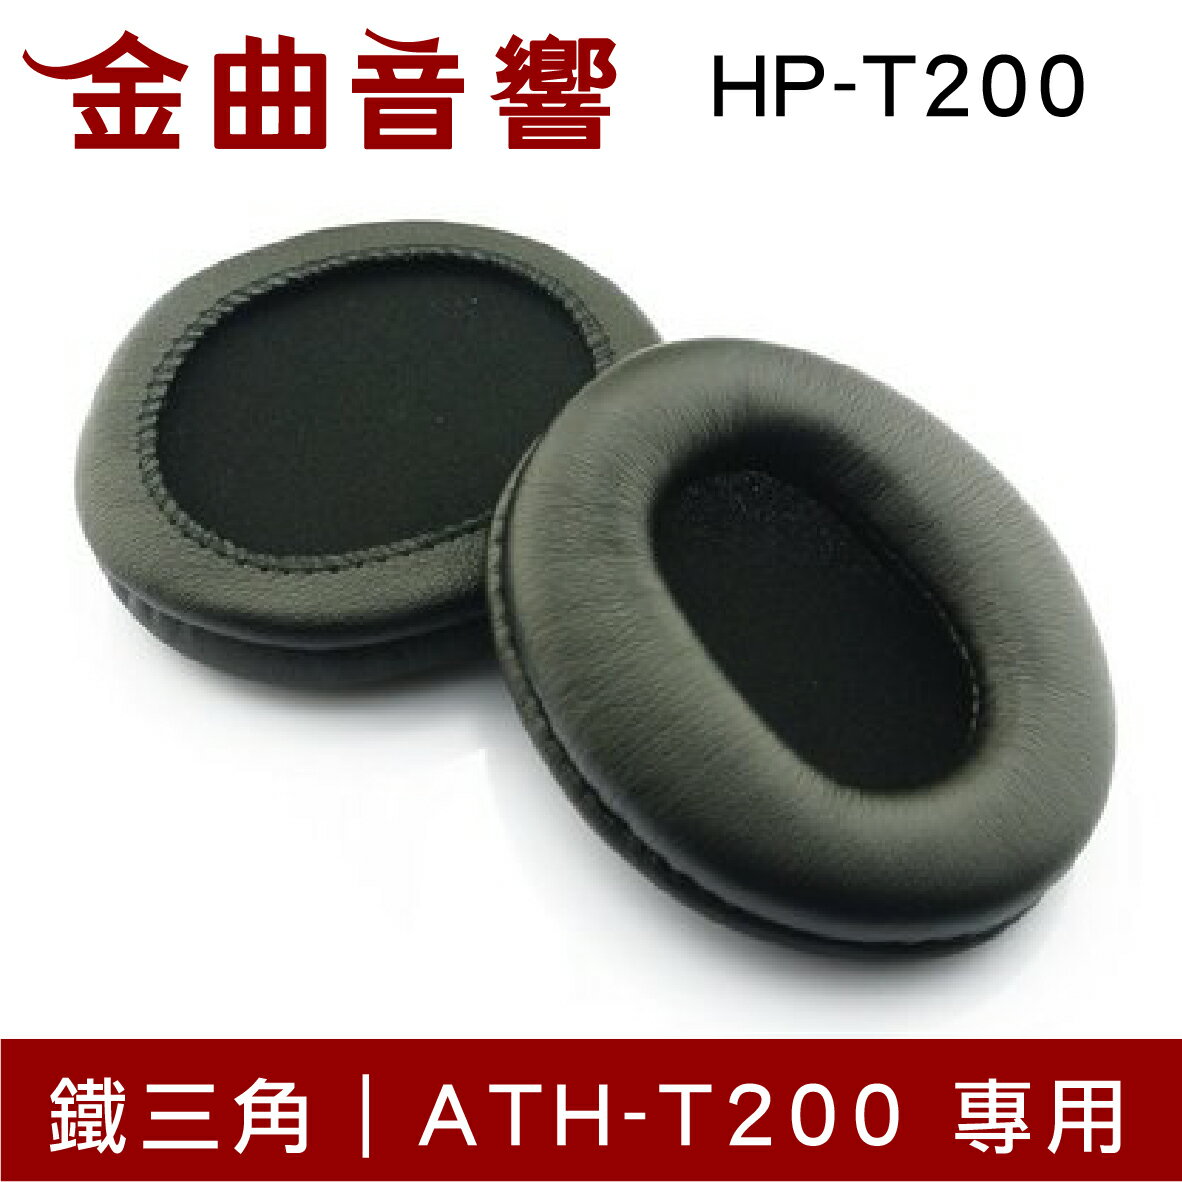 鐵三角 HP-T200 替換耳罩 一對 ATH-T200 專用 | 金曲音響